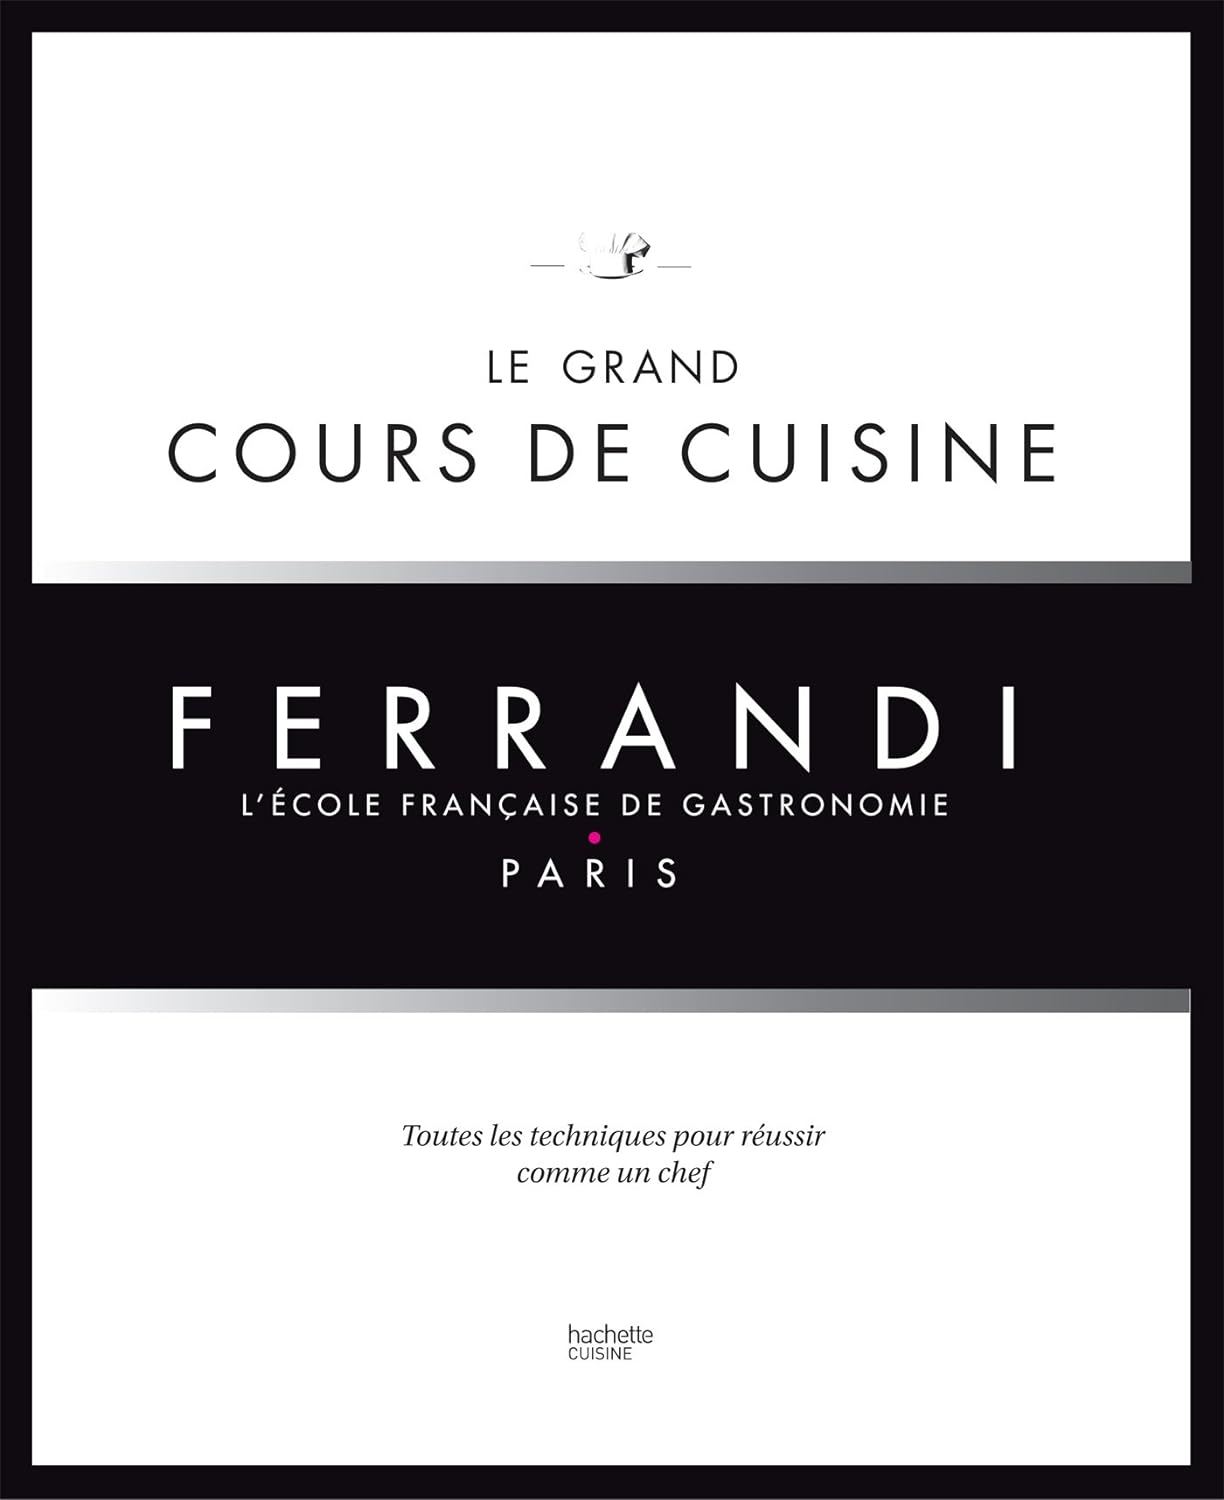 Le grand cours de cuisine FERRANDI: L’école française de gastronomie